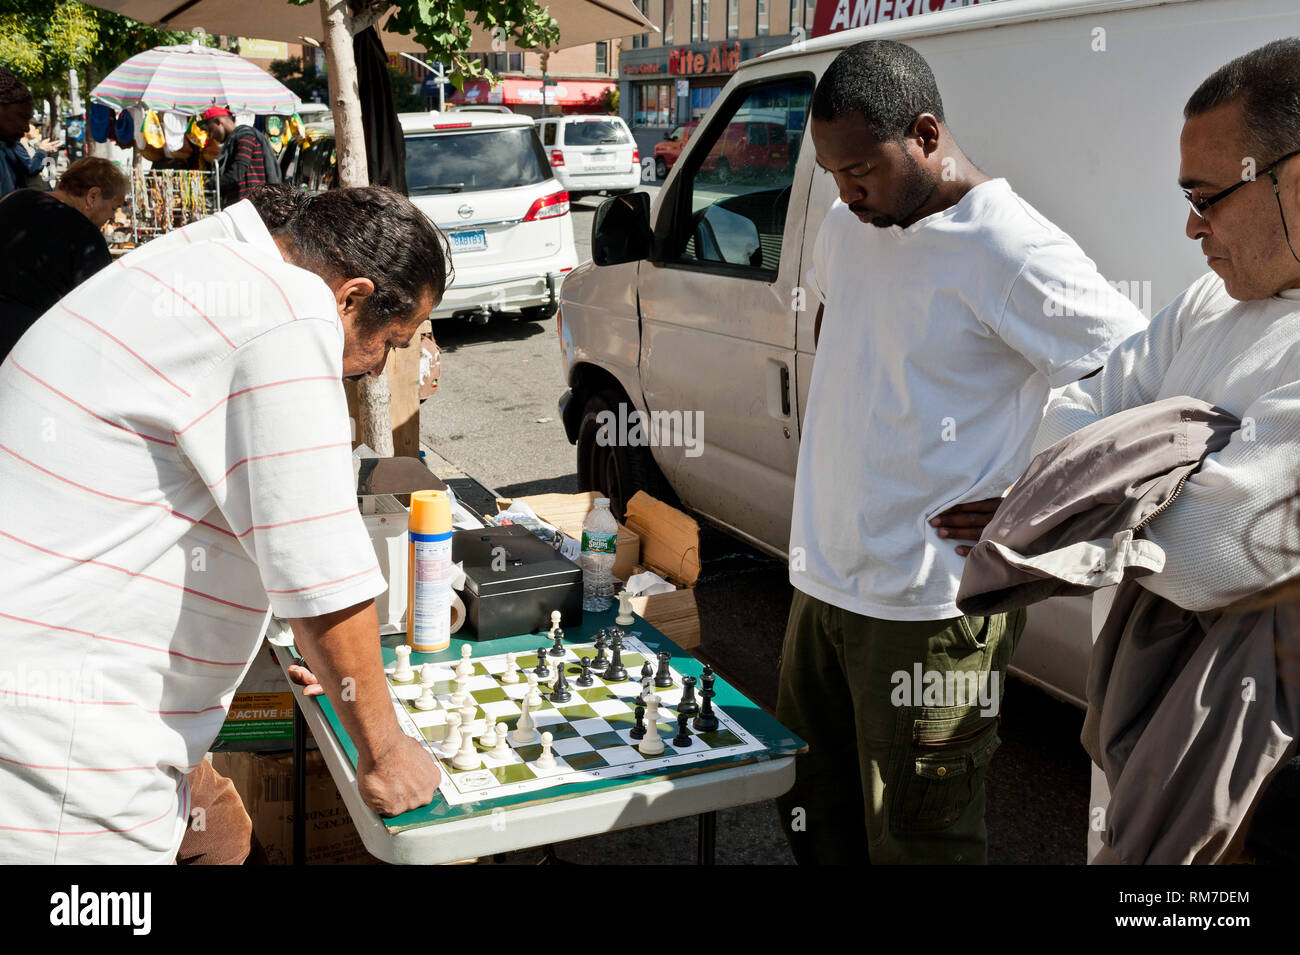 Mixed Race hommes jouent un jeu d'échecs à l'extérieur, au soleil sur la terrasse du domaine de Harlem New York USA Banque D'Images